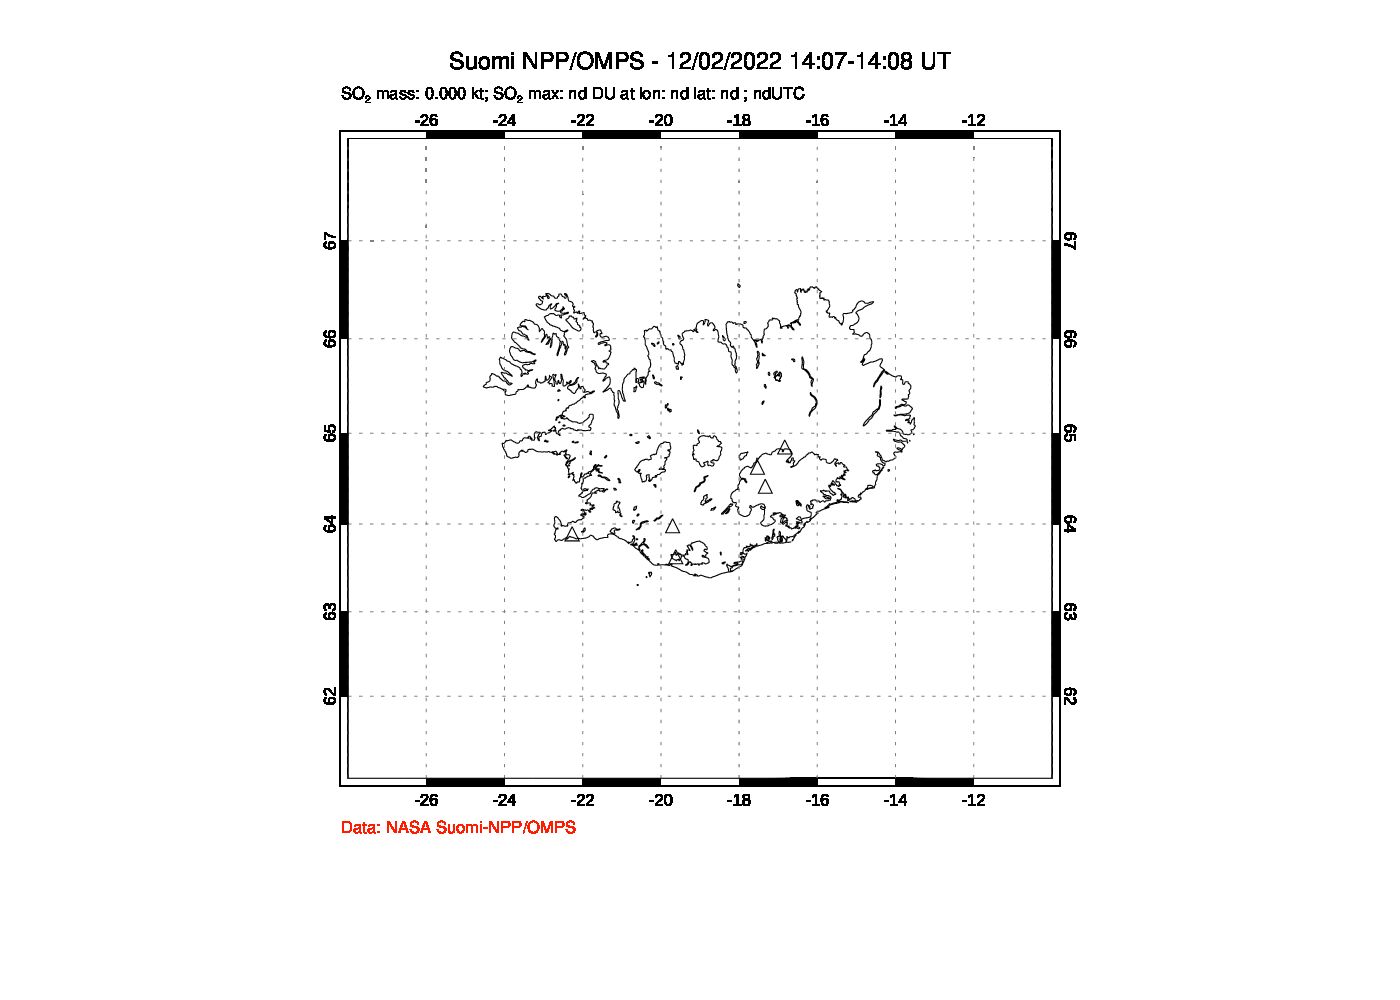 A sulfur dioxide image over Iceland on Dec 02, 2022.